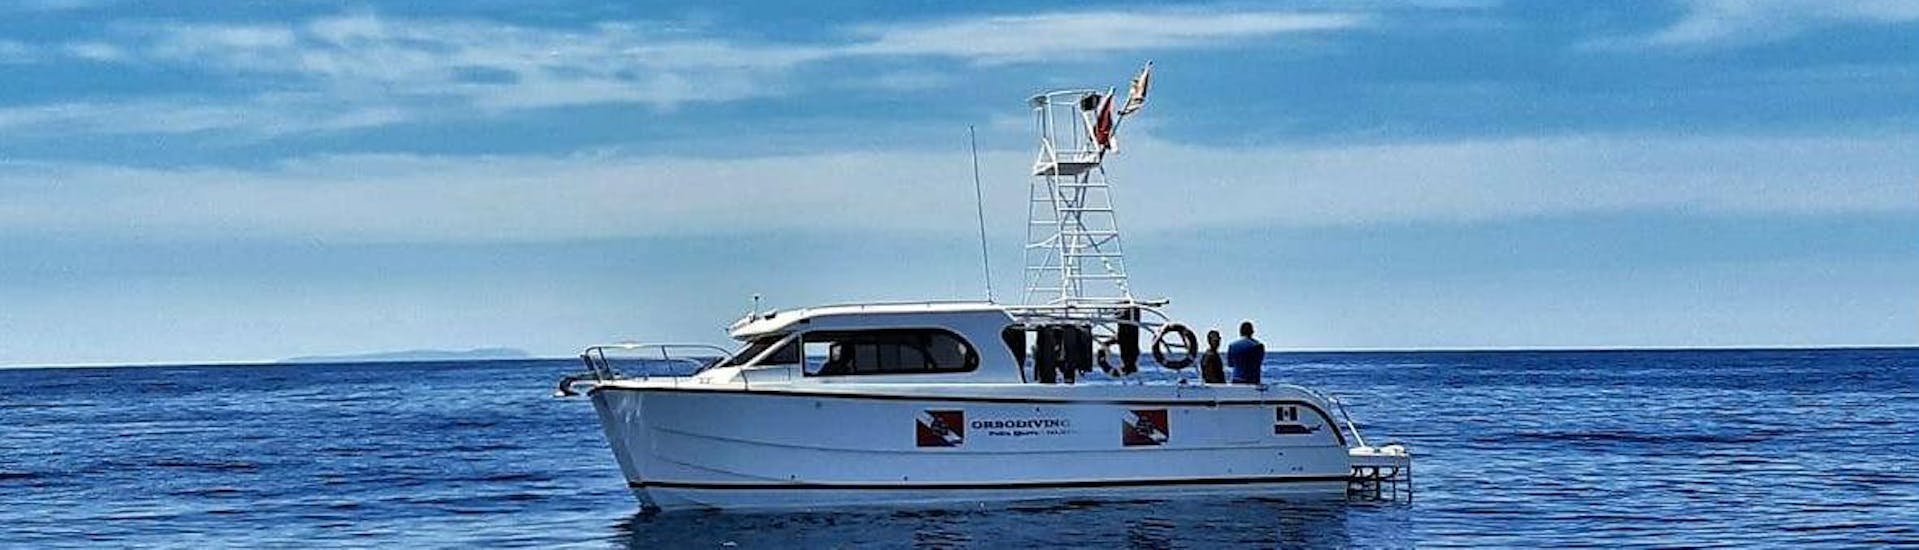 Gita in barca lungo la Costa Smeralda con soste snorkeling.